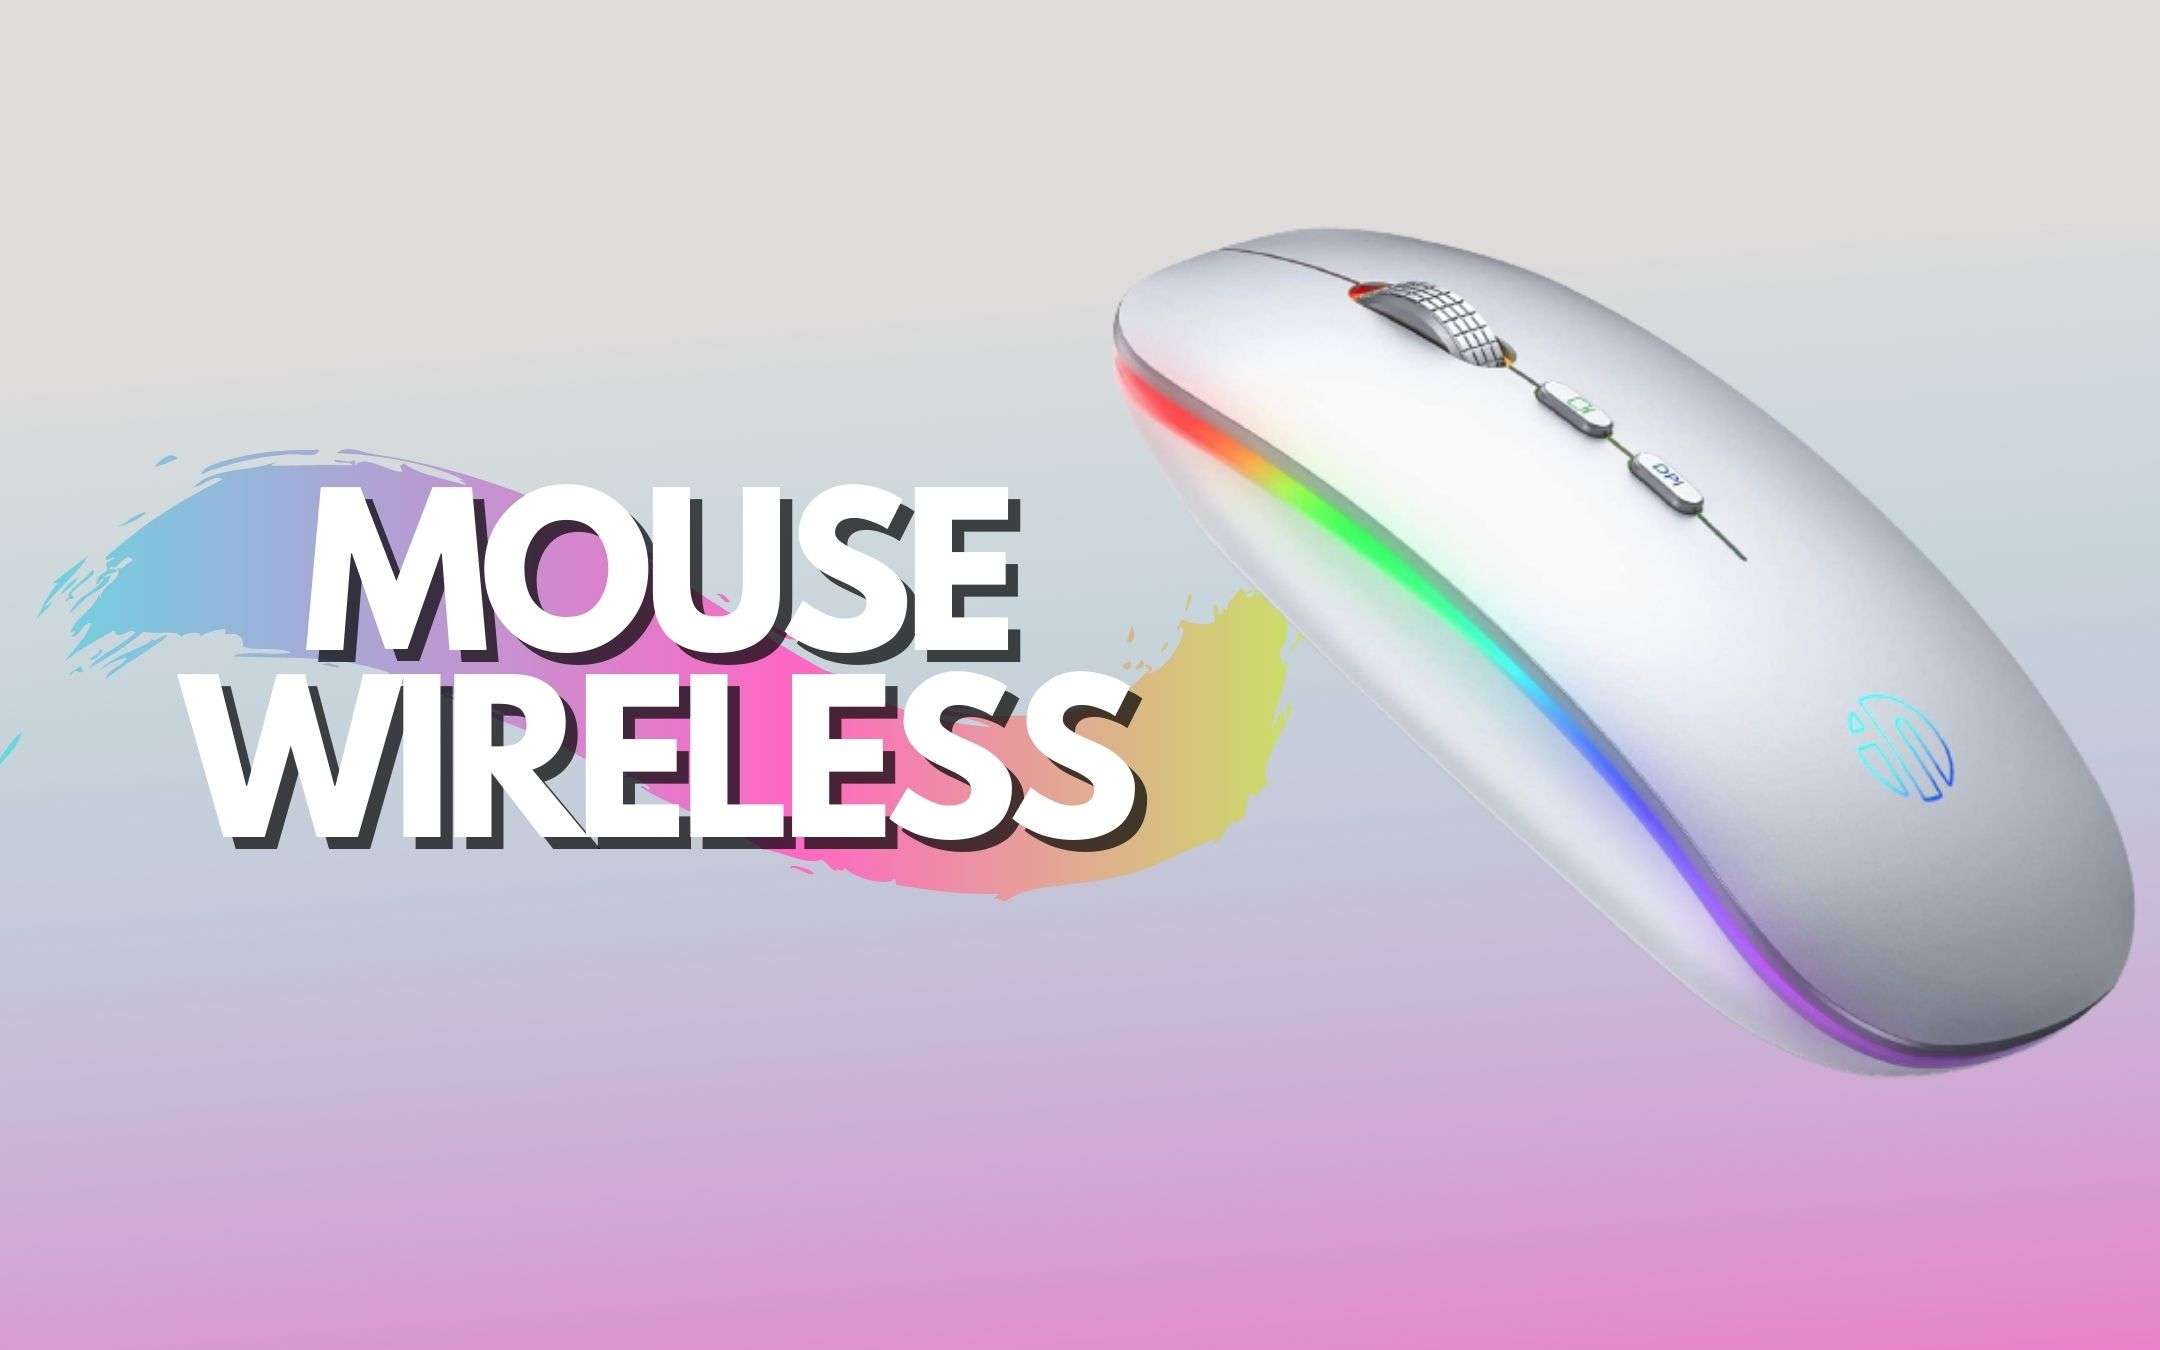 Mouse wireless a meno di 10€: che affare!